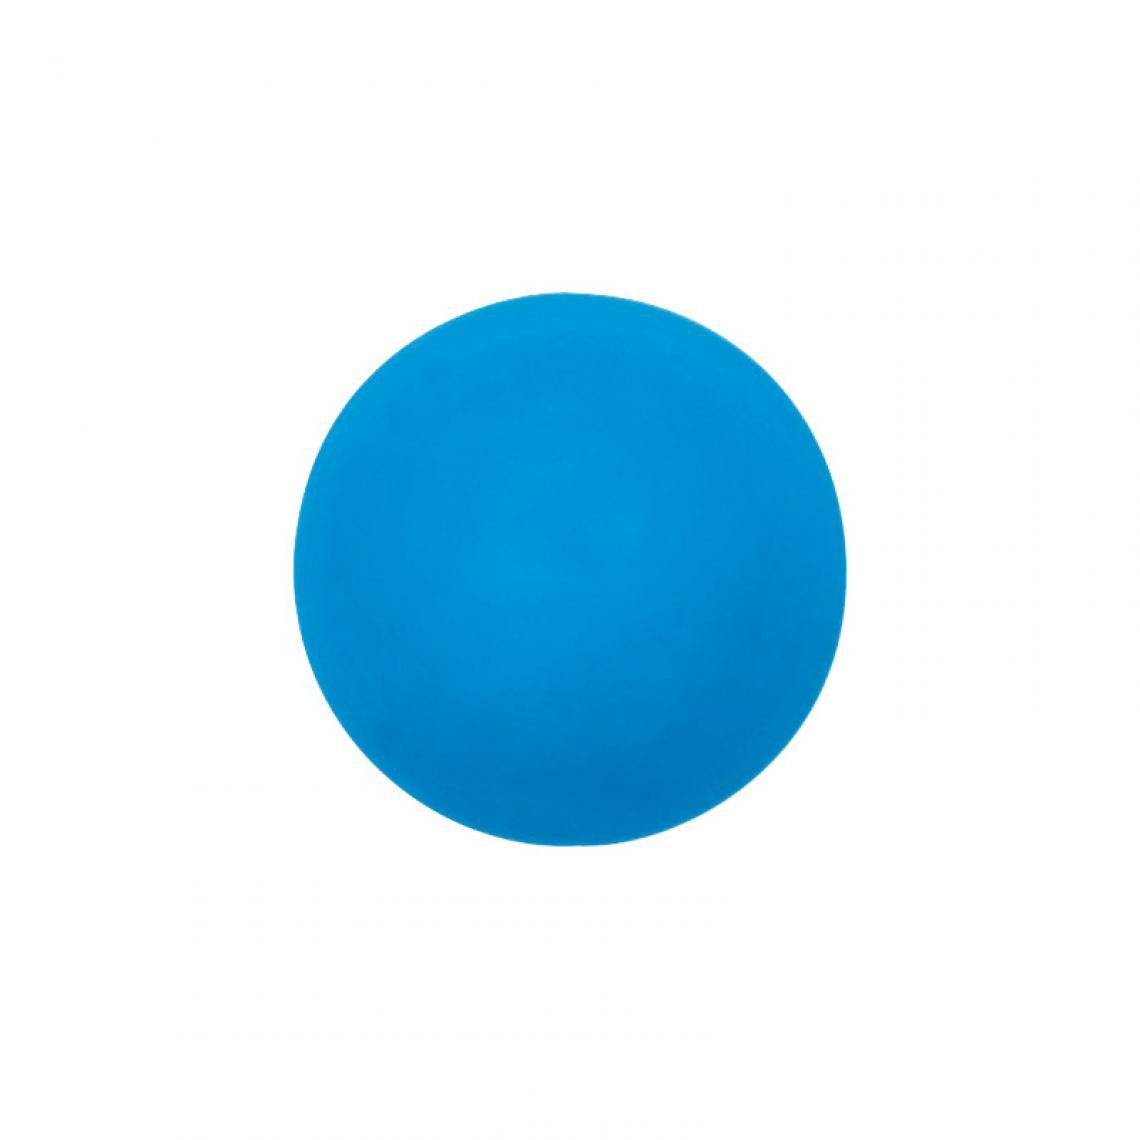 Maul - MAUL Aimant néodyme silicone sphérique, diamètre 12 mm, bleu () - Visserie